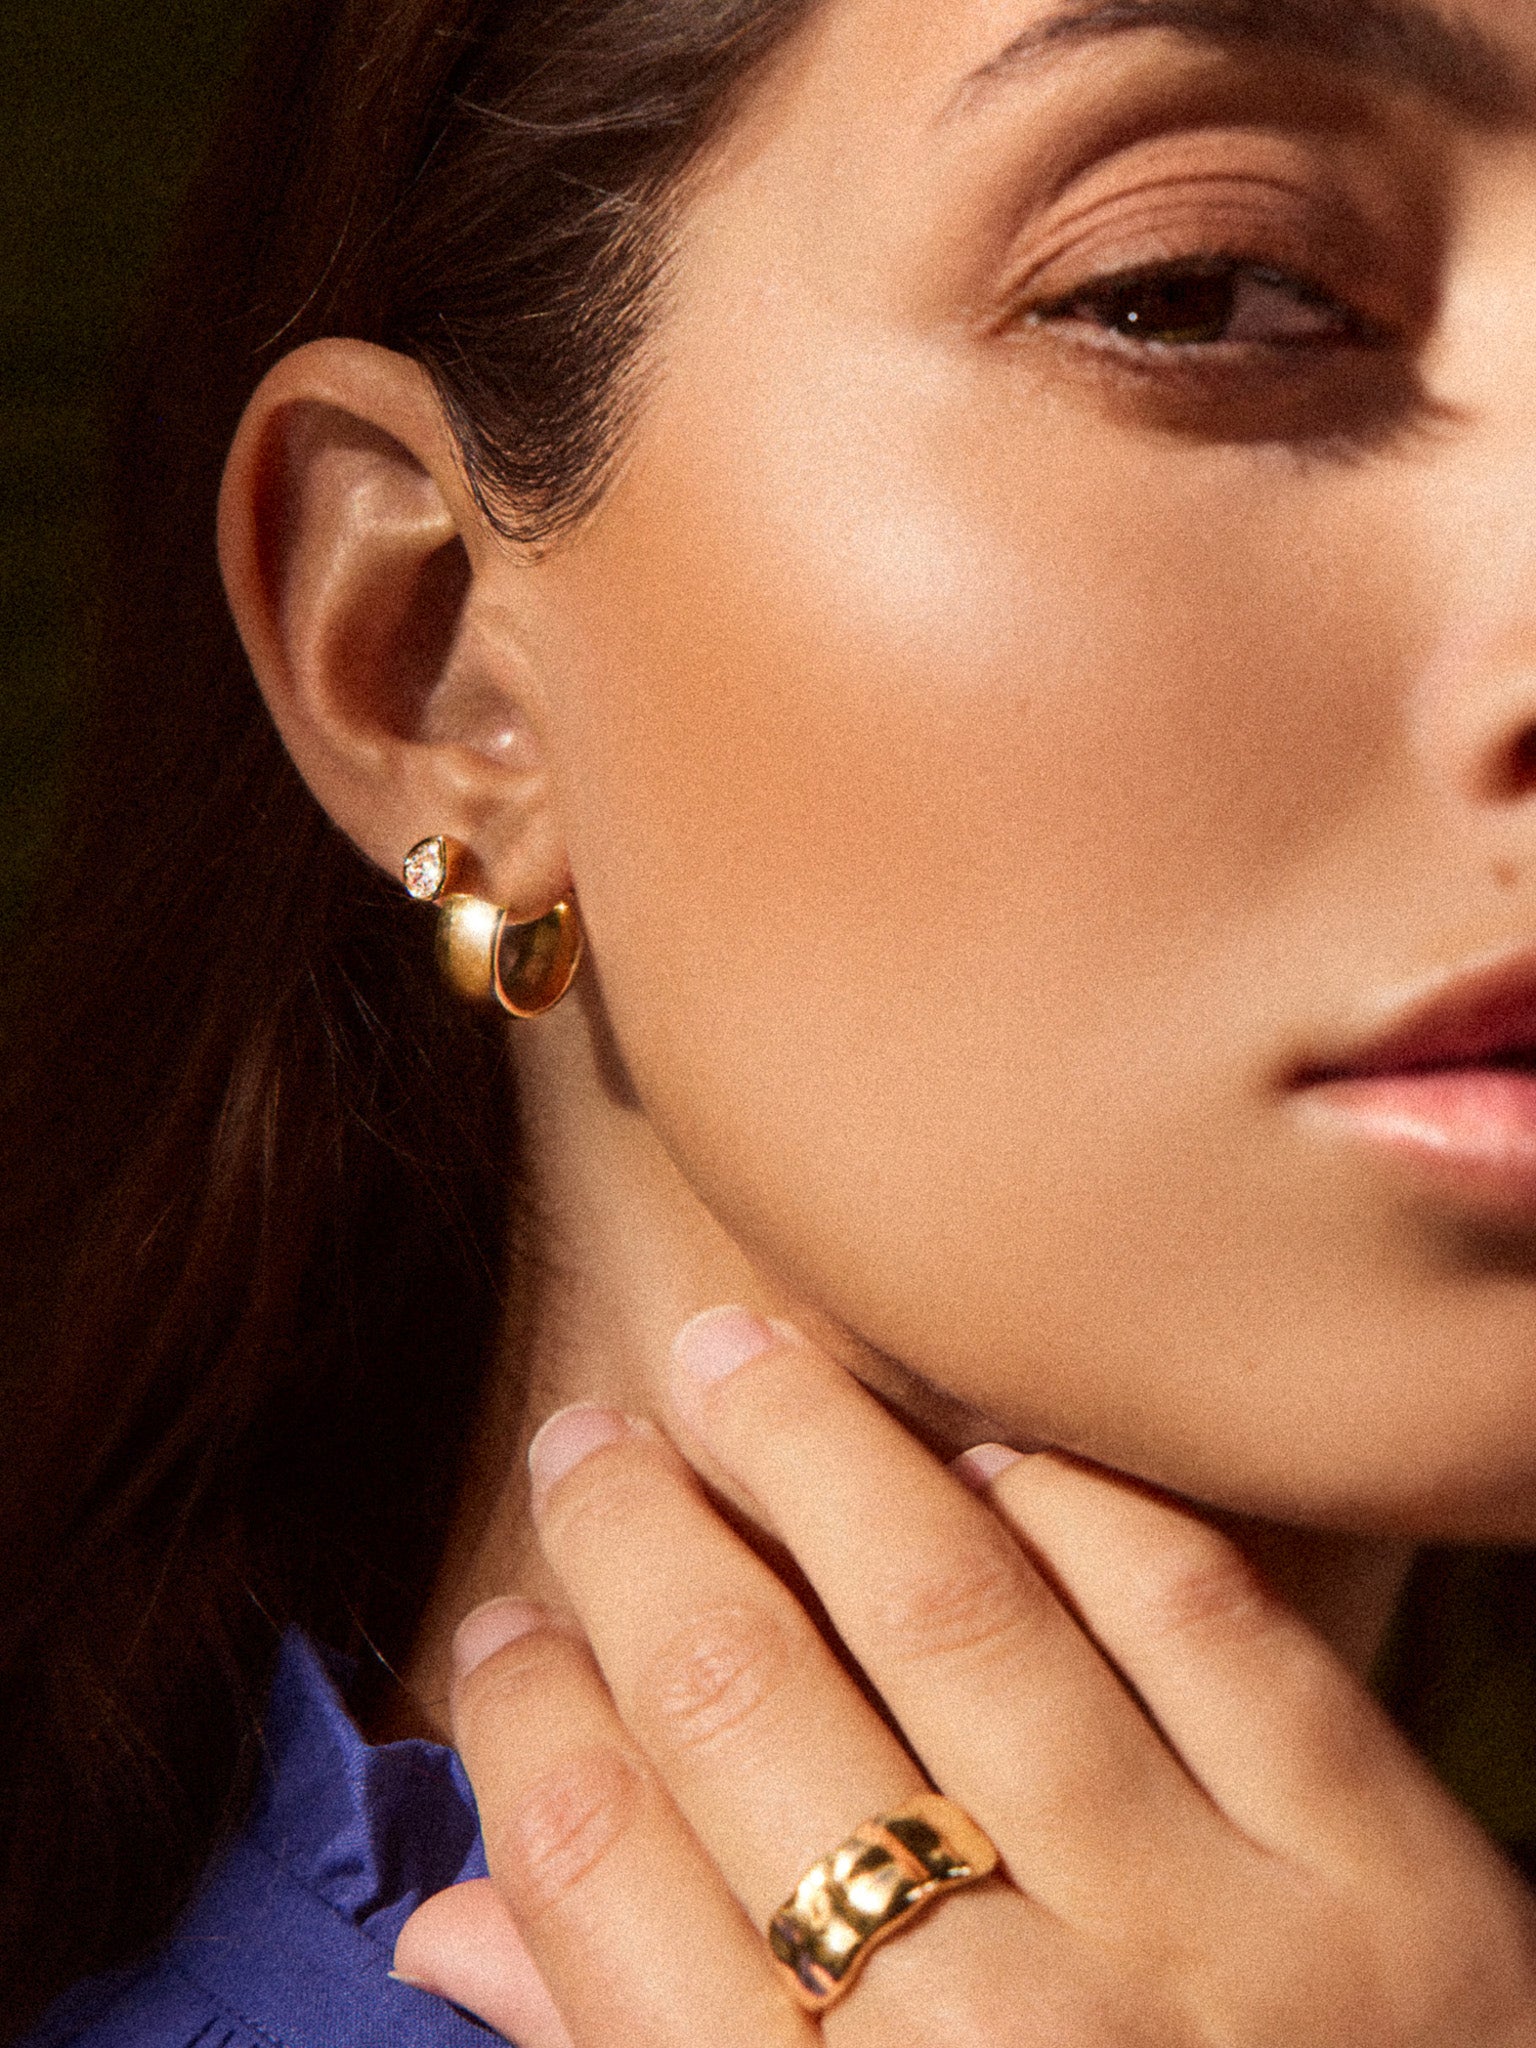 18k yellow gold Romance Pear Diamond Droplet earrings on ear